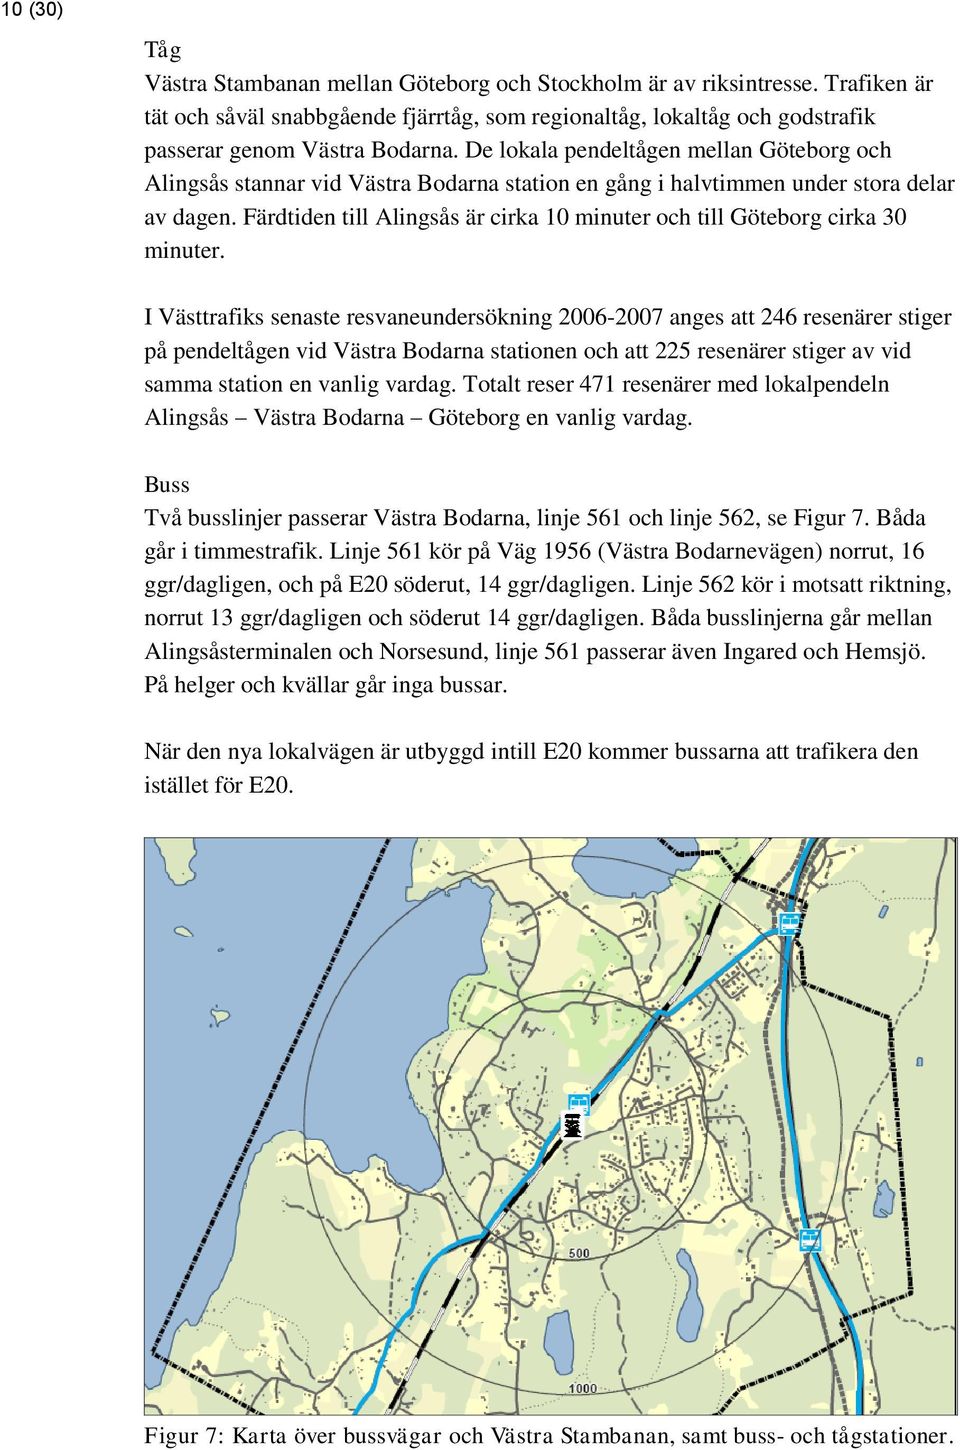 Färdtiden till Alingsås är cirka 10 minuter och till Göteborg cirka 30 minuter.